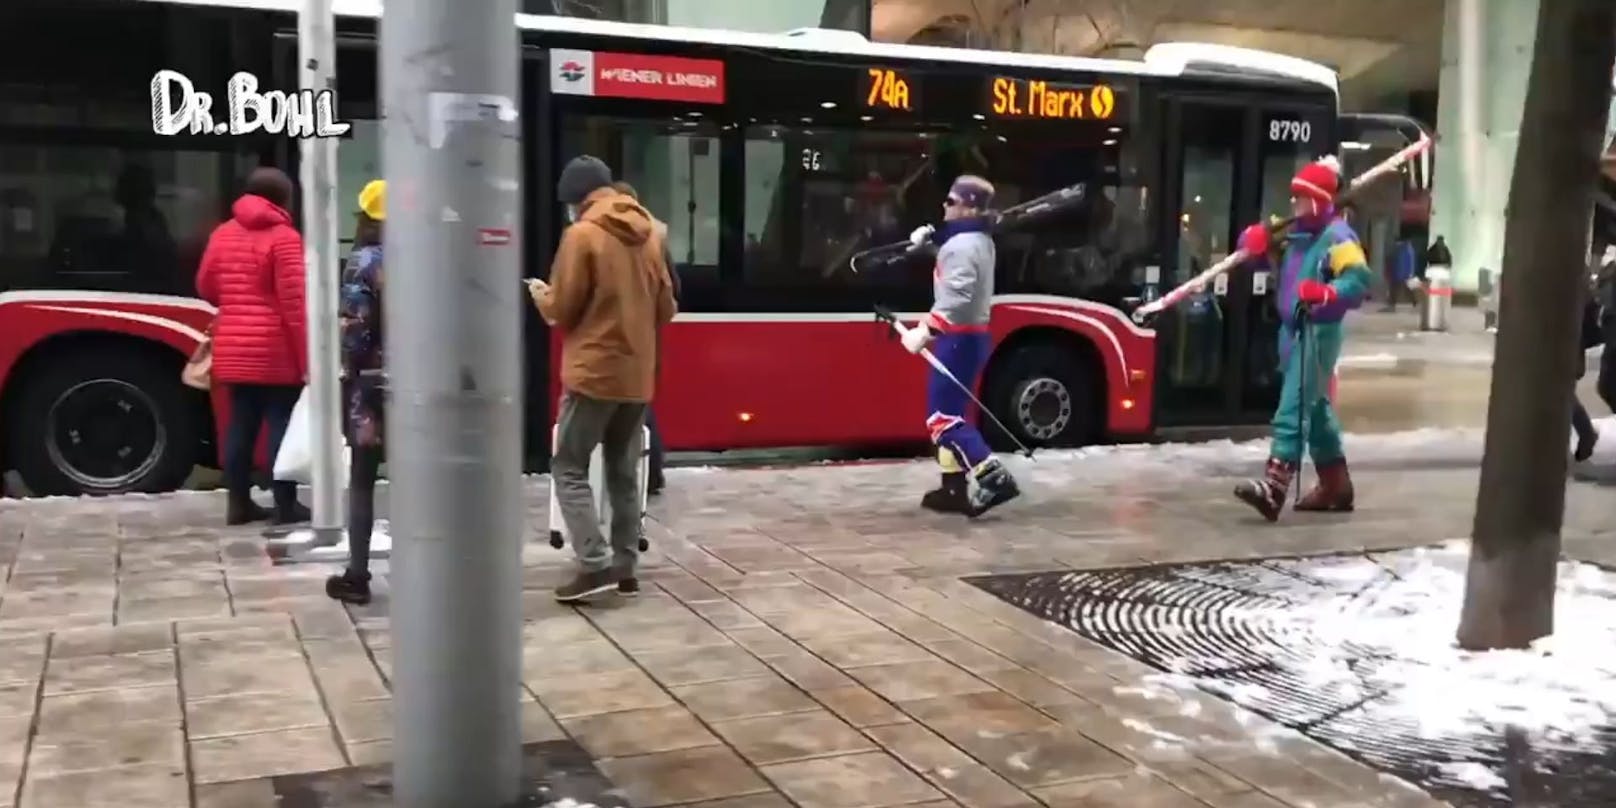 Ist das der Ski-Bus auf den Wienerberg?